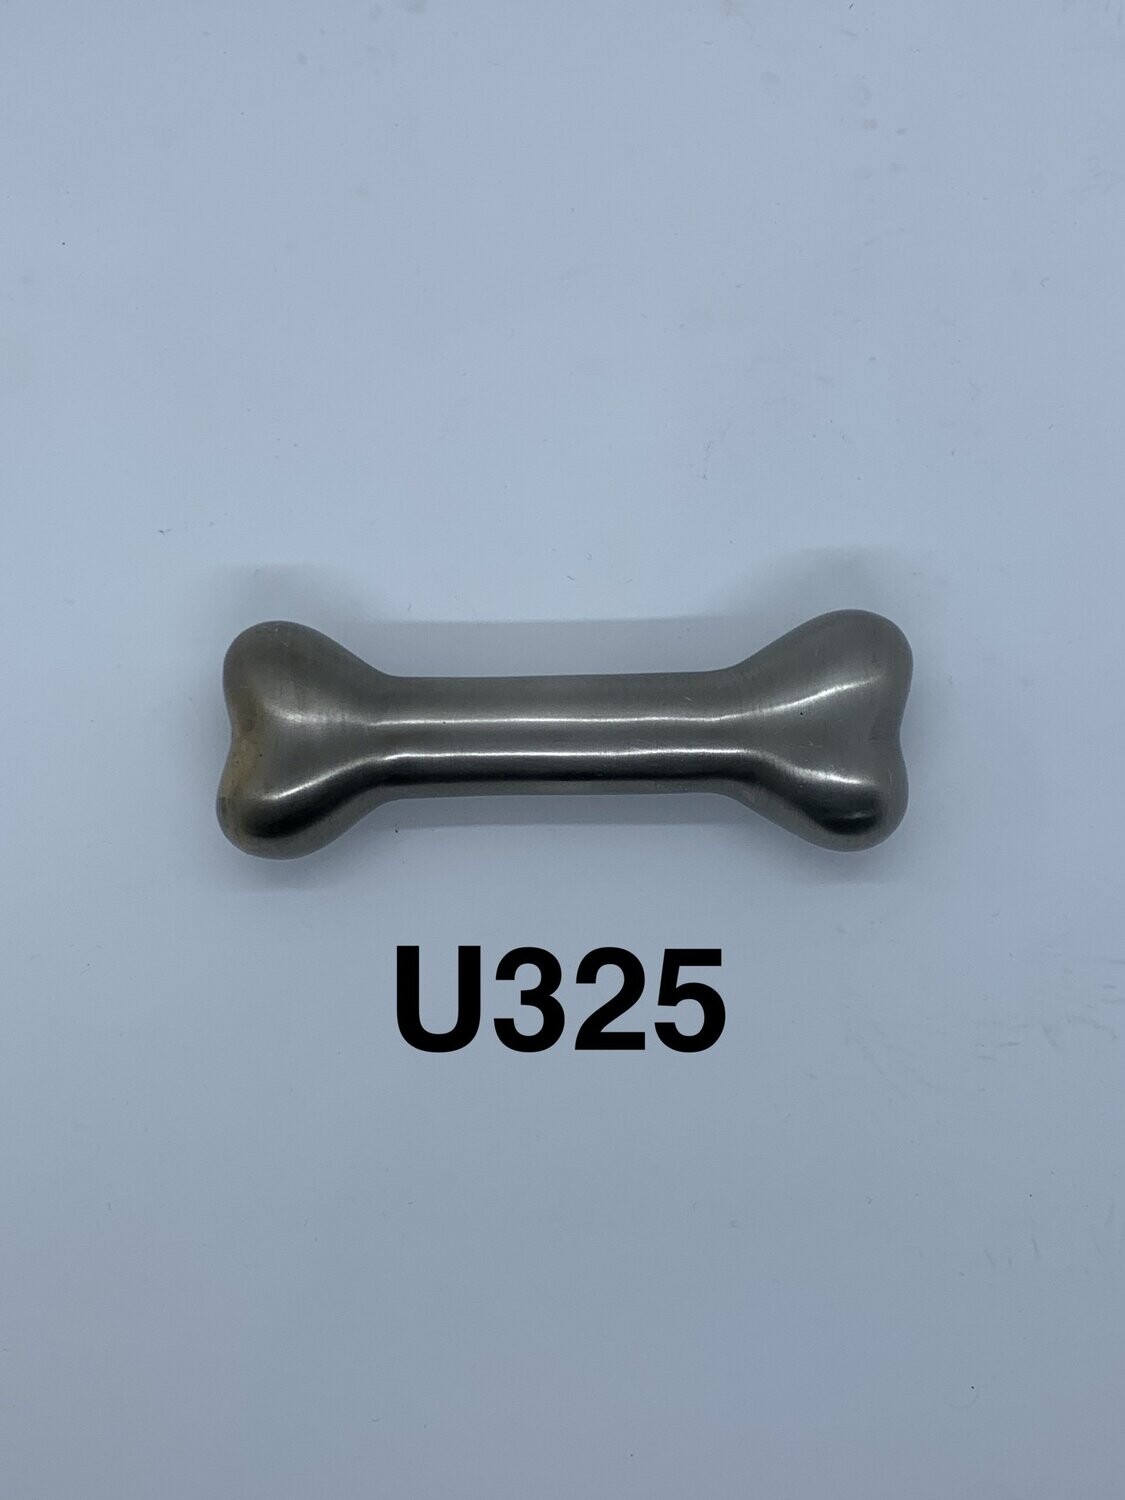 U325